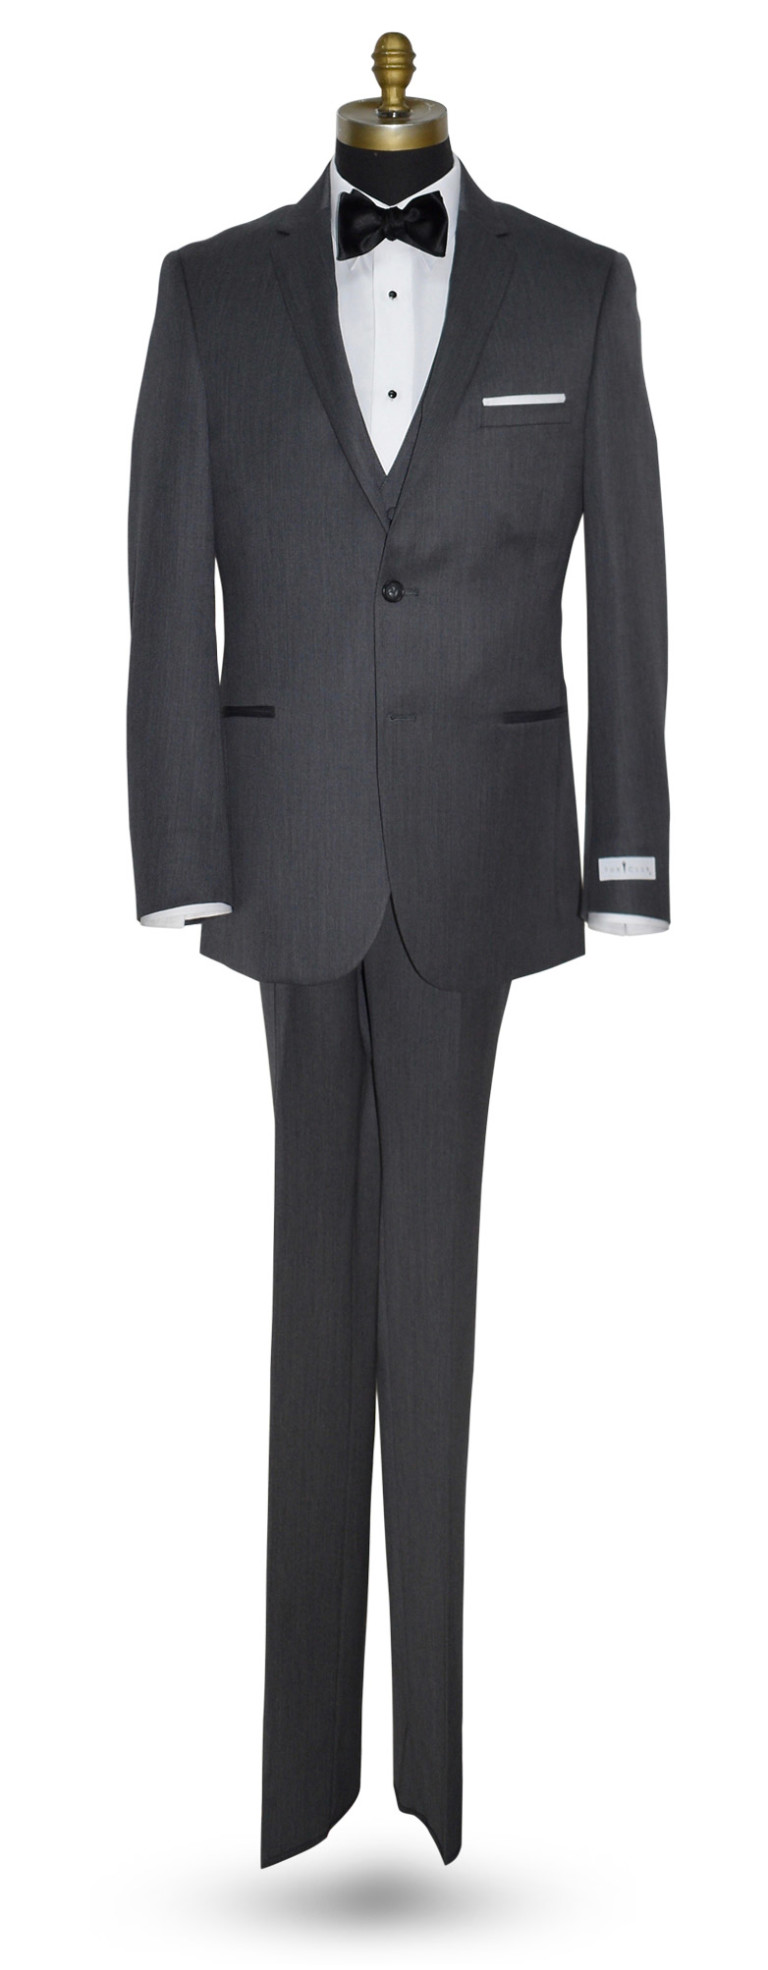 Michael Koors Slim Fit Charcoal Suit